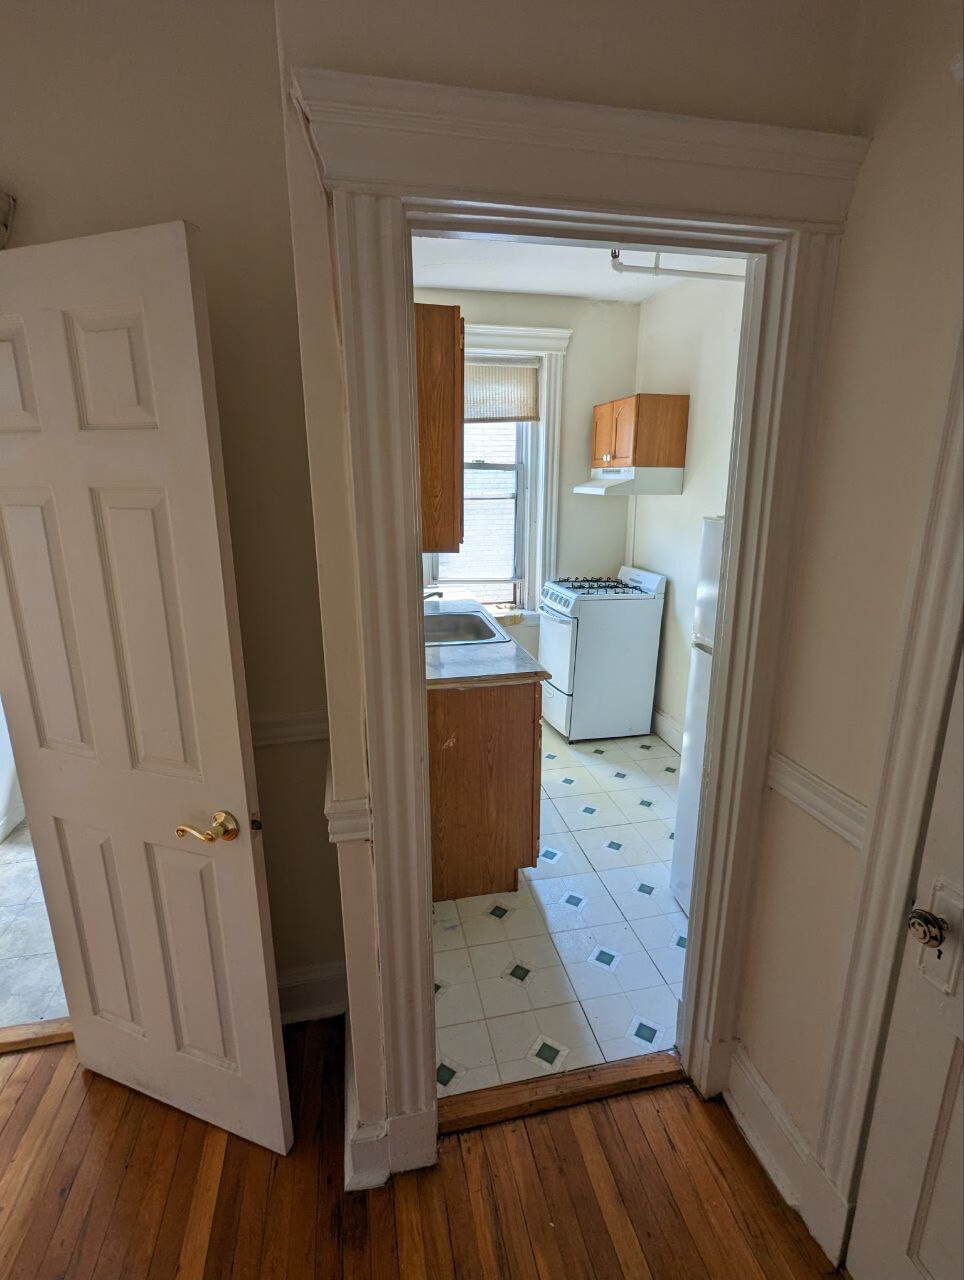 Photos of apartment on Marlborough St.,Boston MA 02115